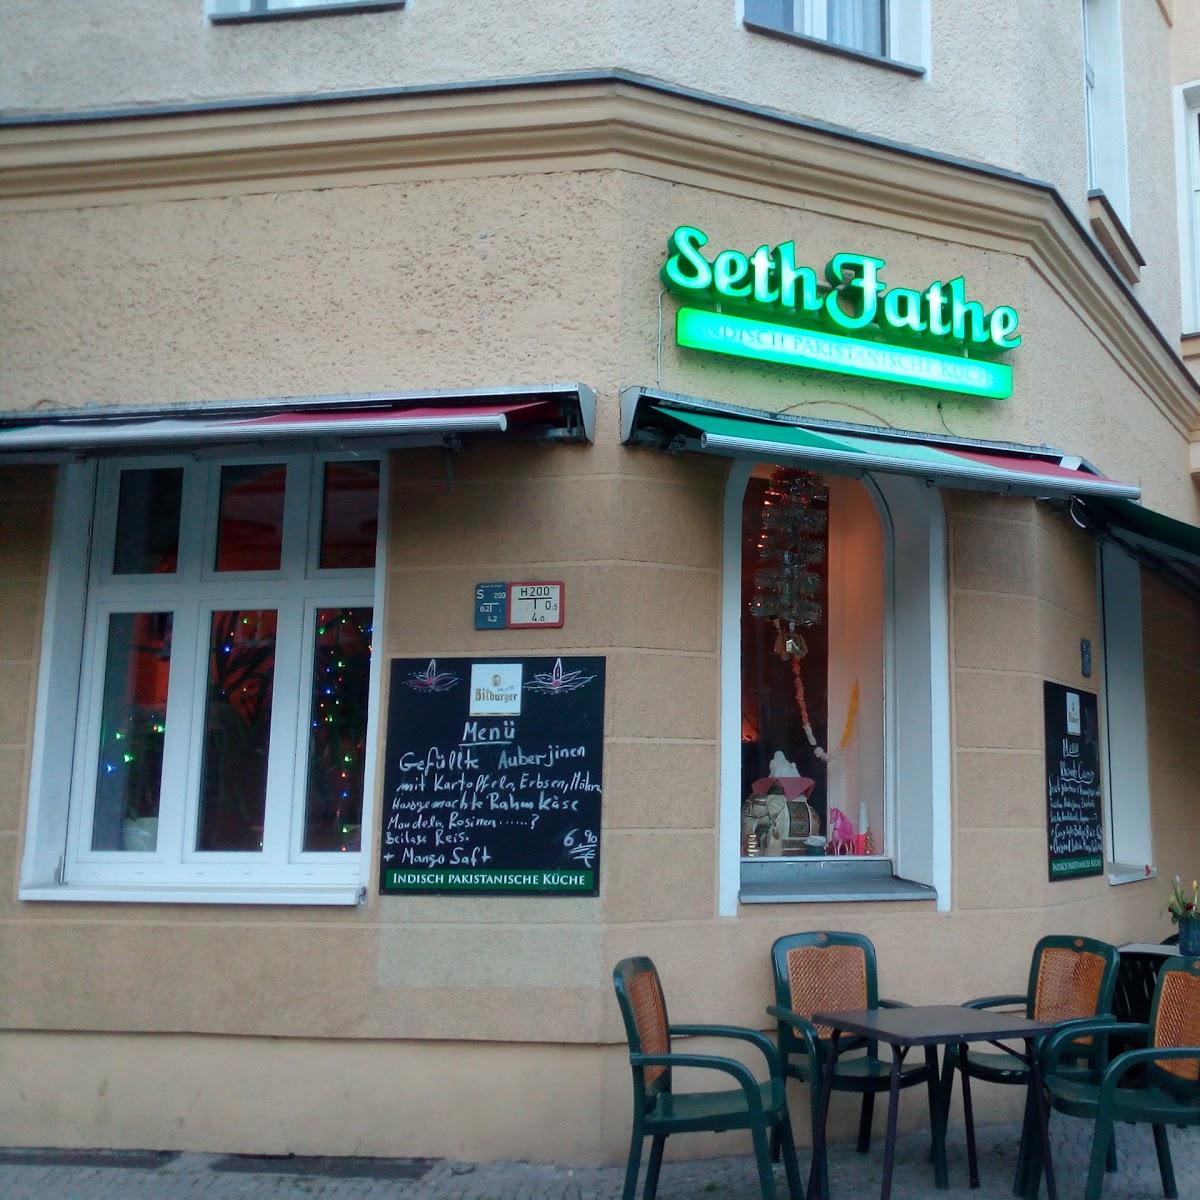 Restaurant "Seth & Fathe Indische & Pakistanische Spezialitäten" in Berlin